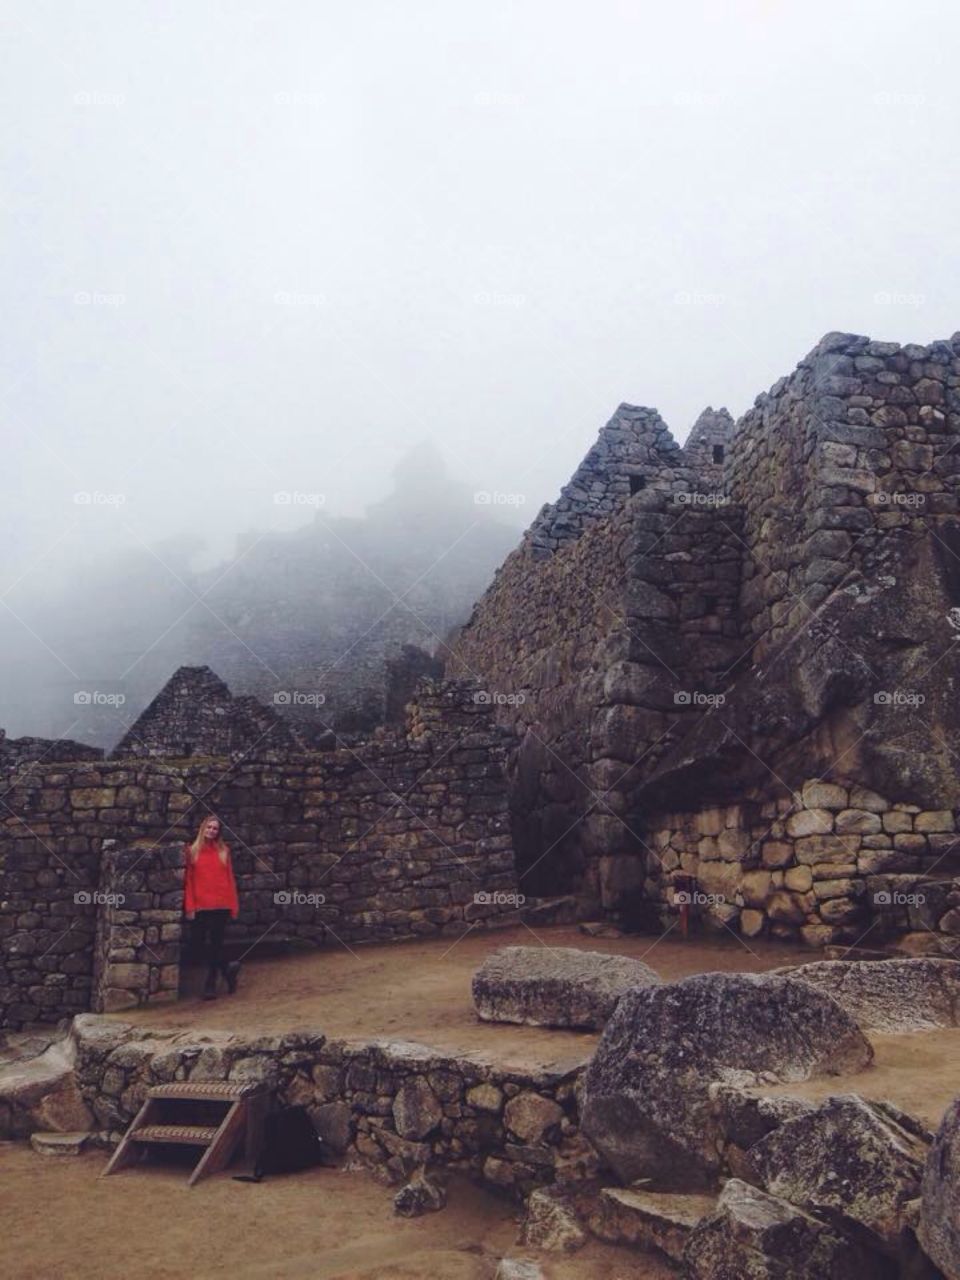 Machu Picchu on a foggy day